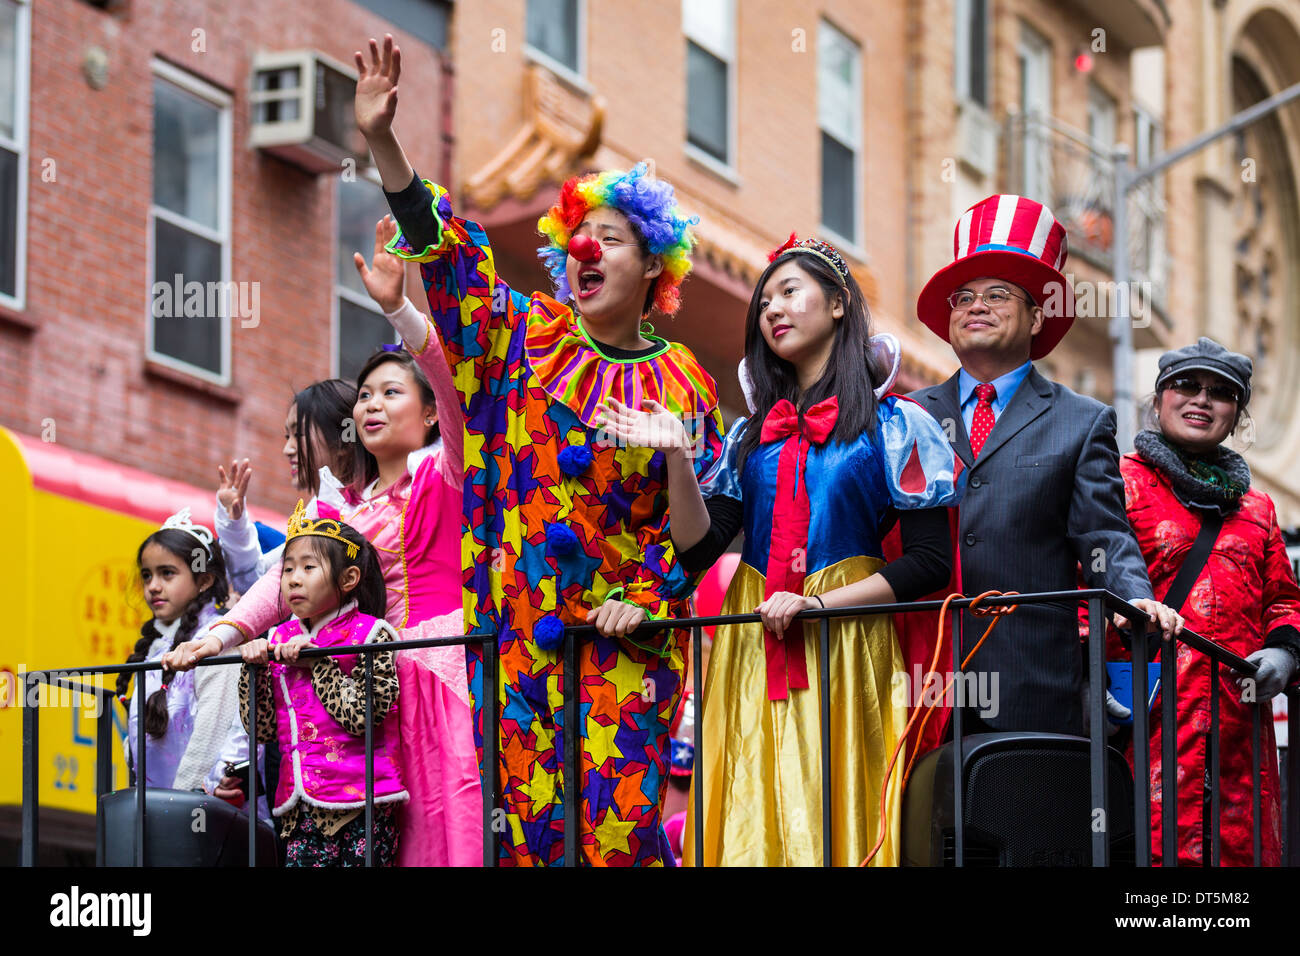 Jeune homme vêtu d'un costume clown salue la foule lors de la fête de la nouvelle année lunaire dans le quartier chinois Banque D'Images